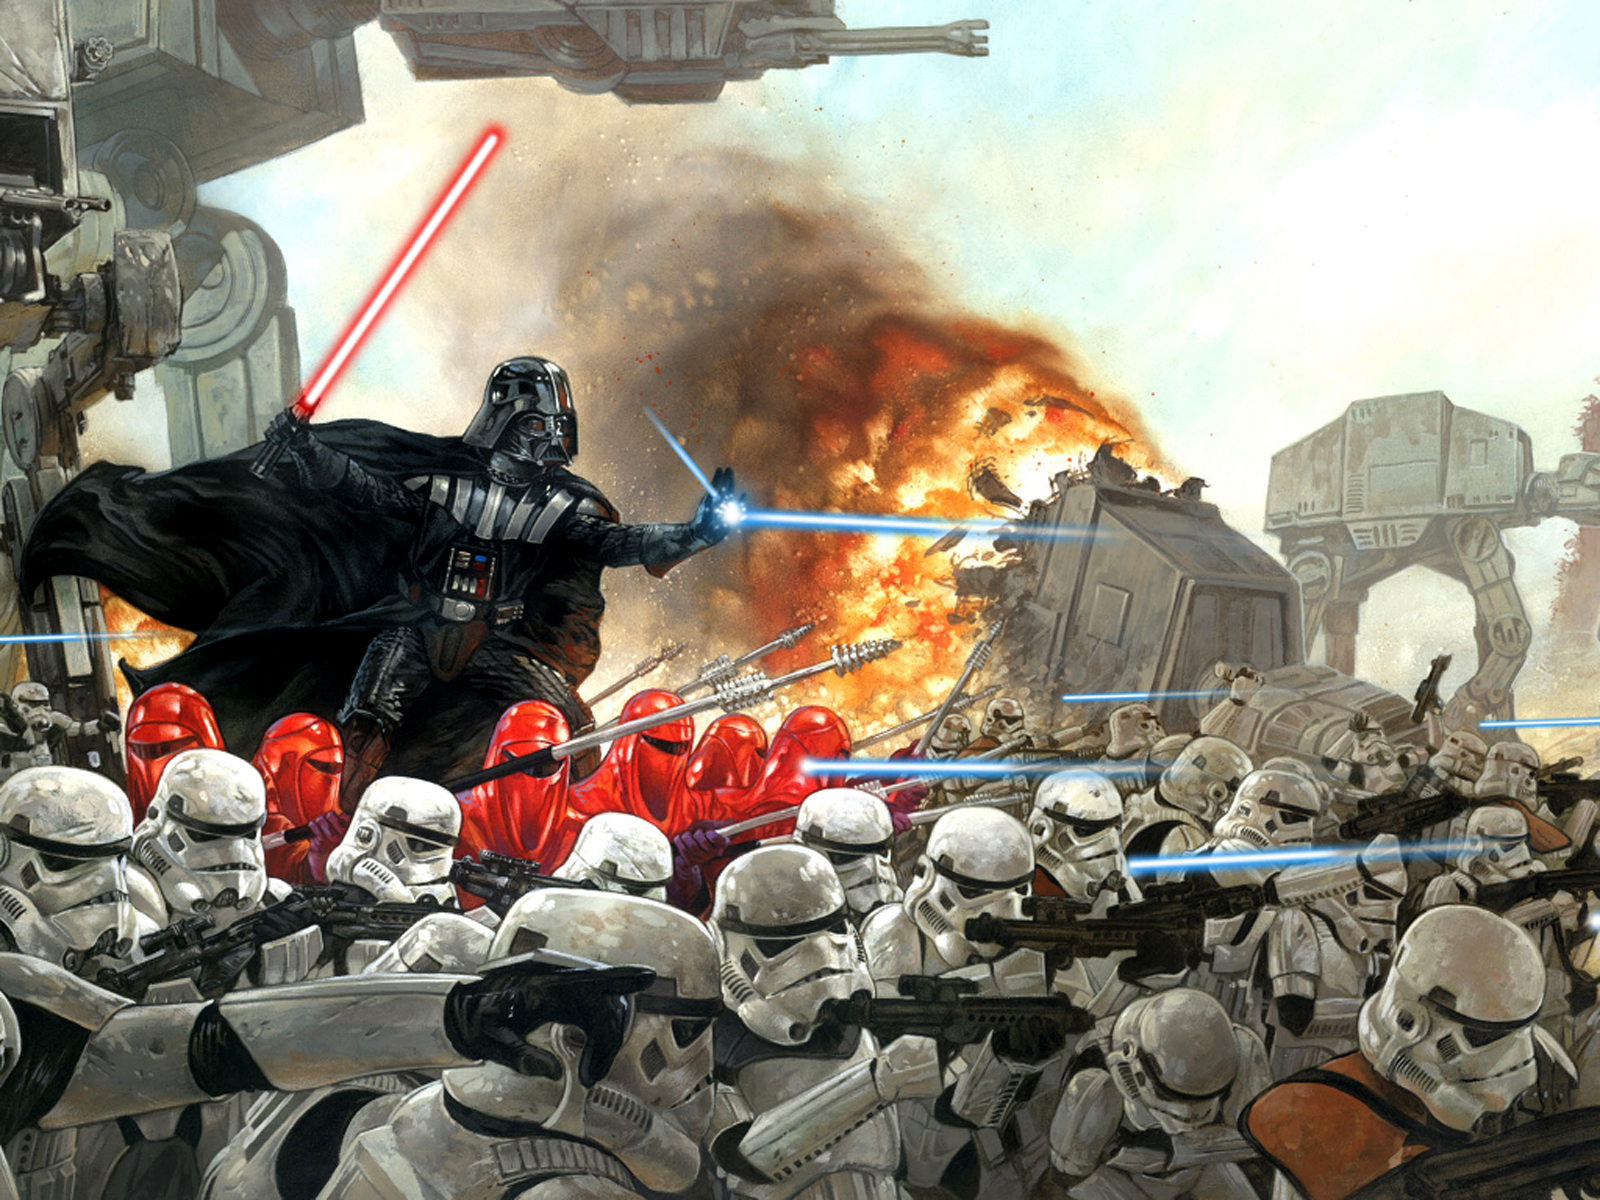 Desktop Wallpaper Of Star Wars Darth Vader In Battle